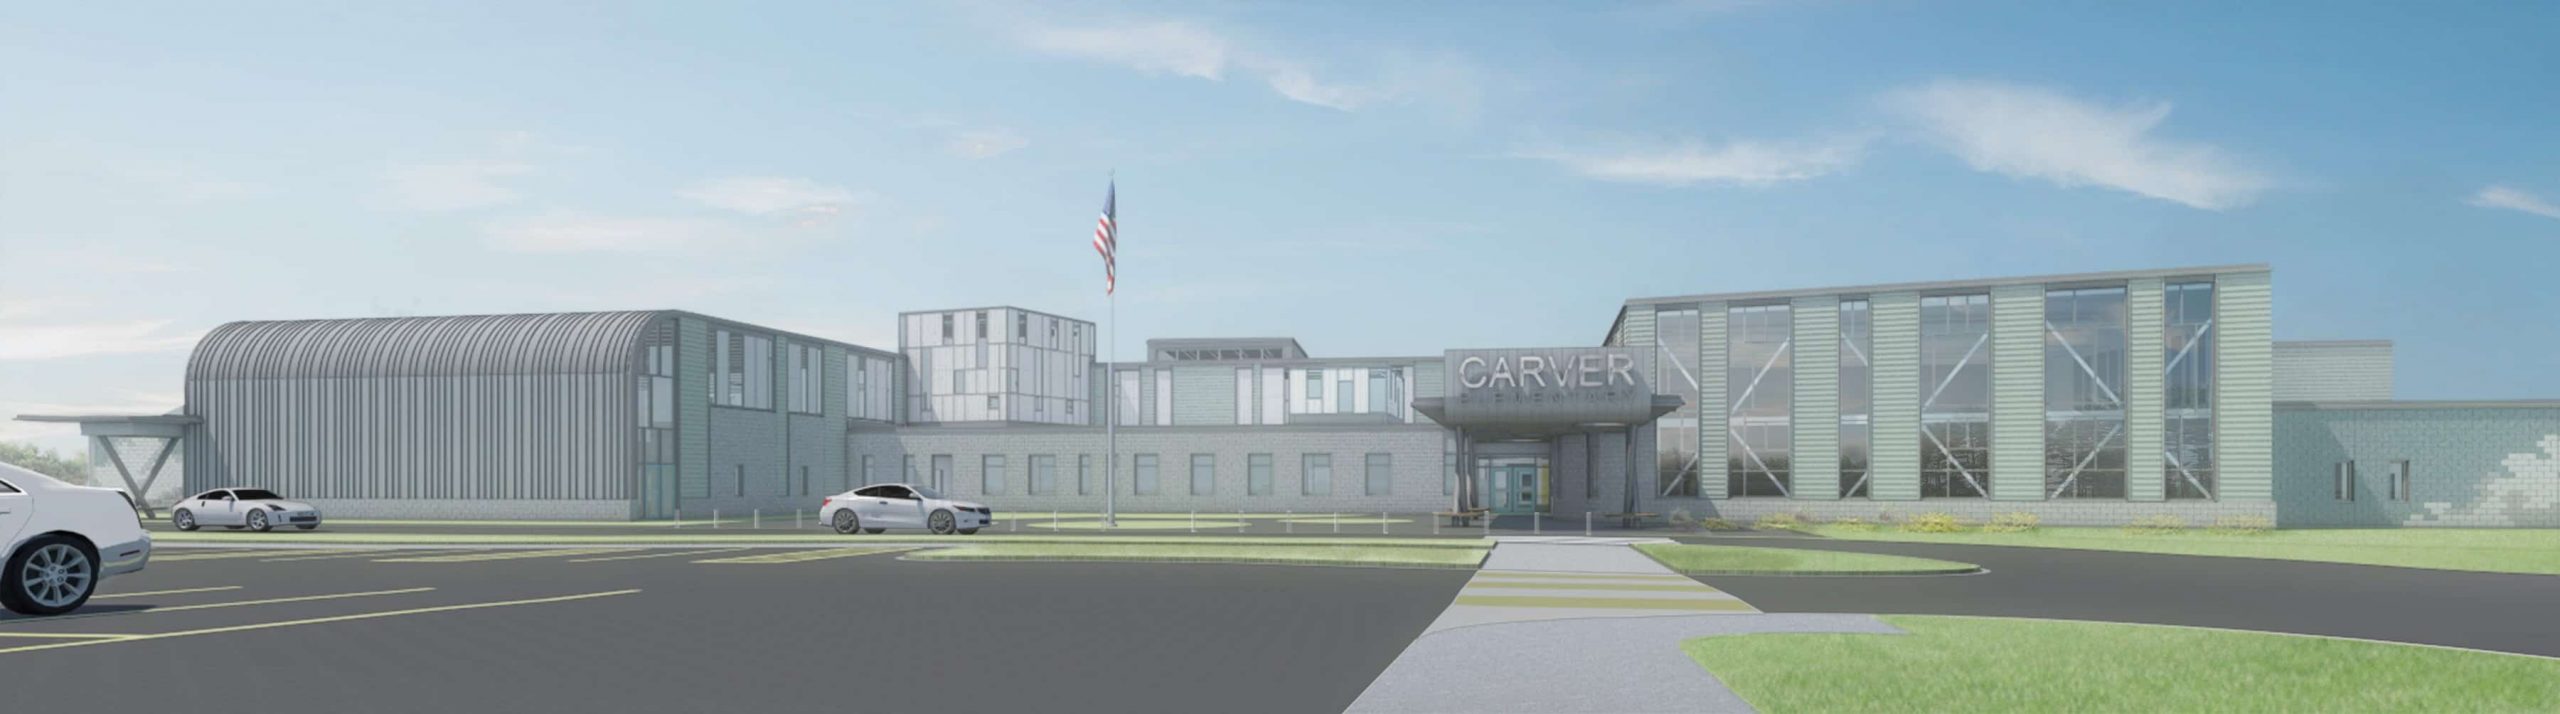 carver-elementary-school-rendering